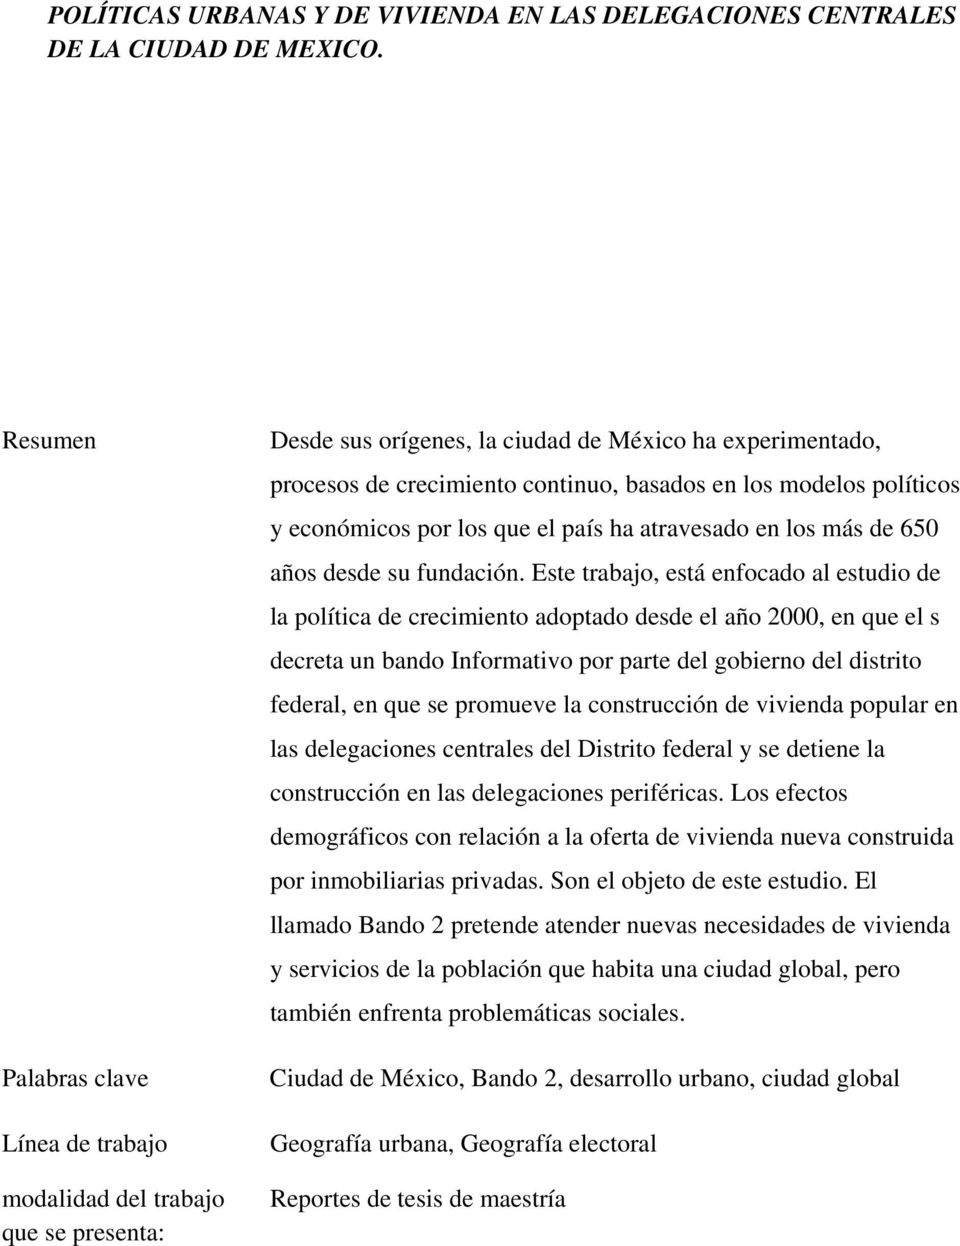 Social, UNAM Correo electrónico Resumen Palabras clave Línea de trabajo modalidad del trabajo que se presenta: galopeze@mexico.